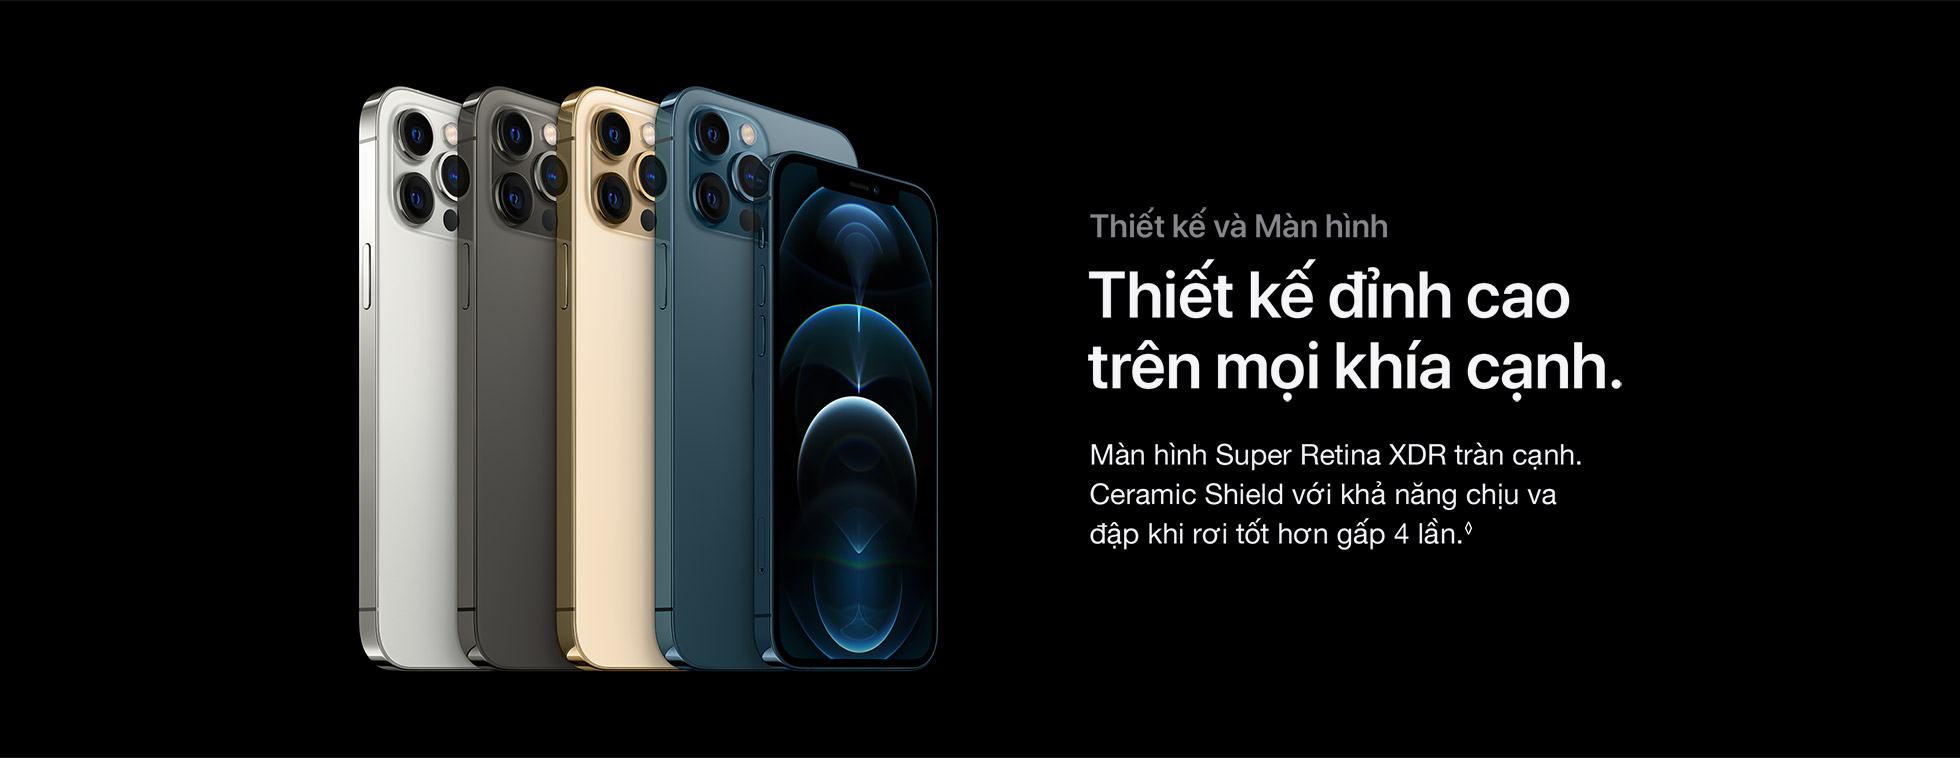 iPhone 12 Pro Max Thiết kế và Màn hình